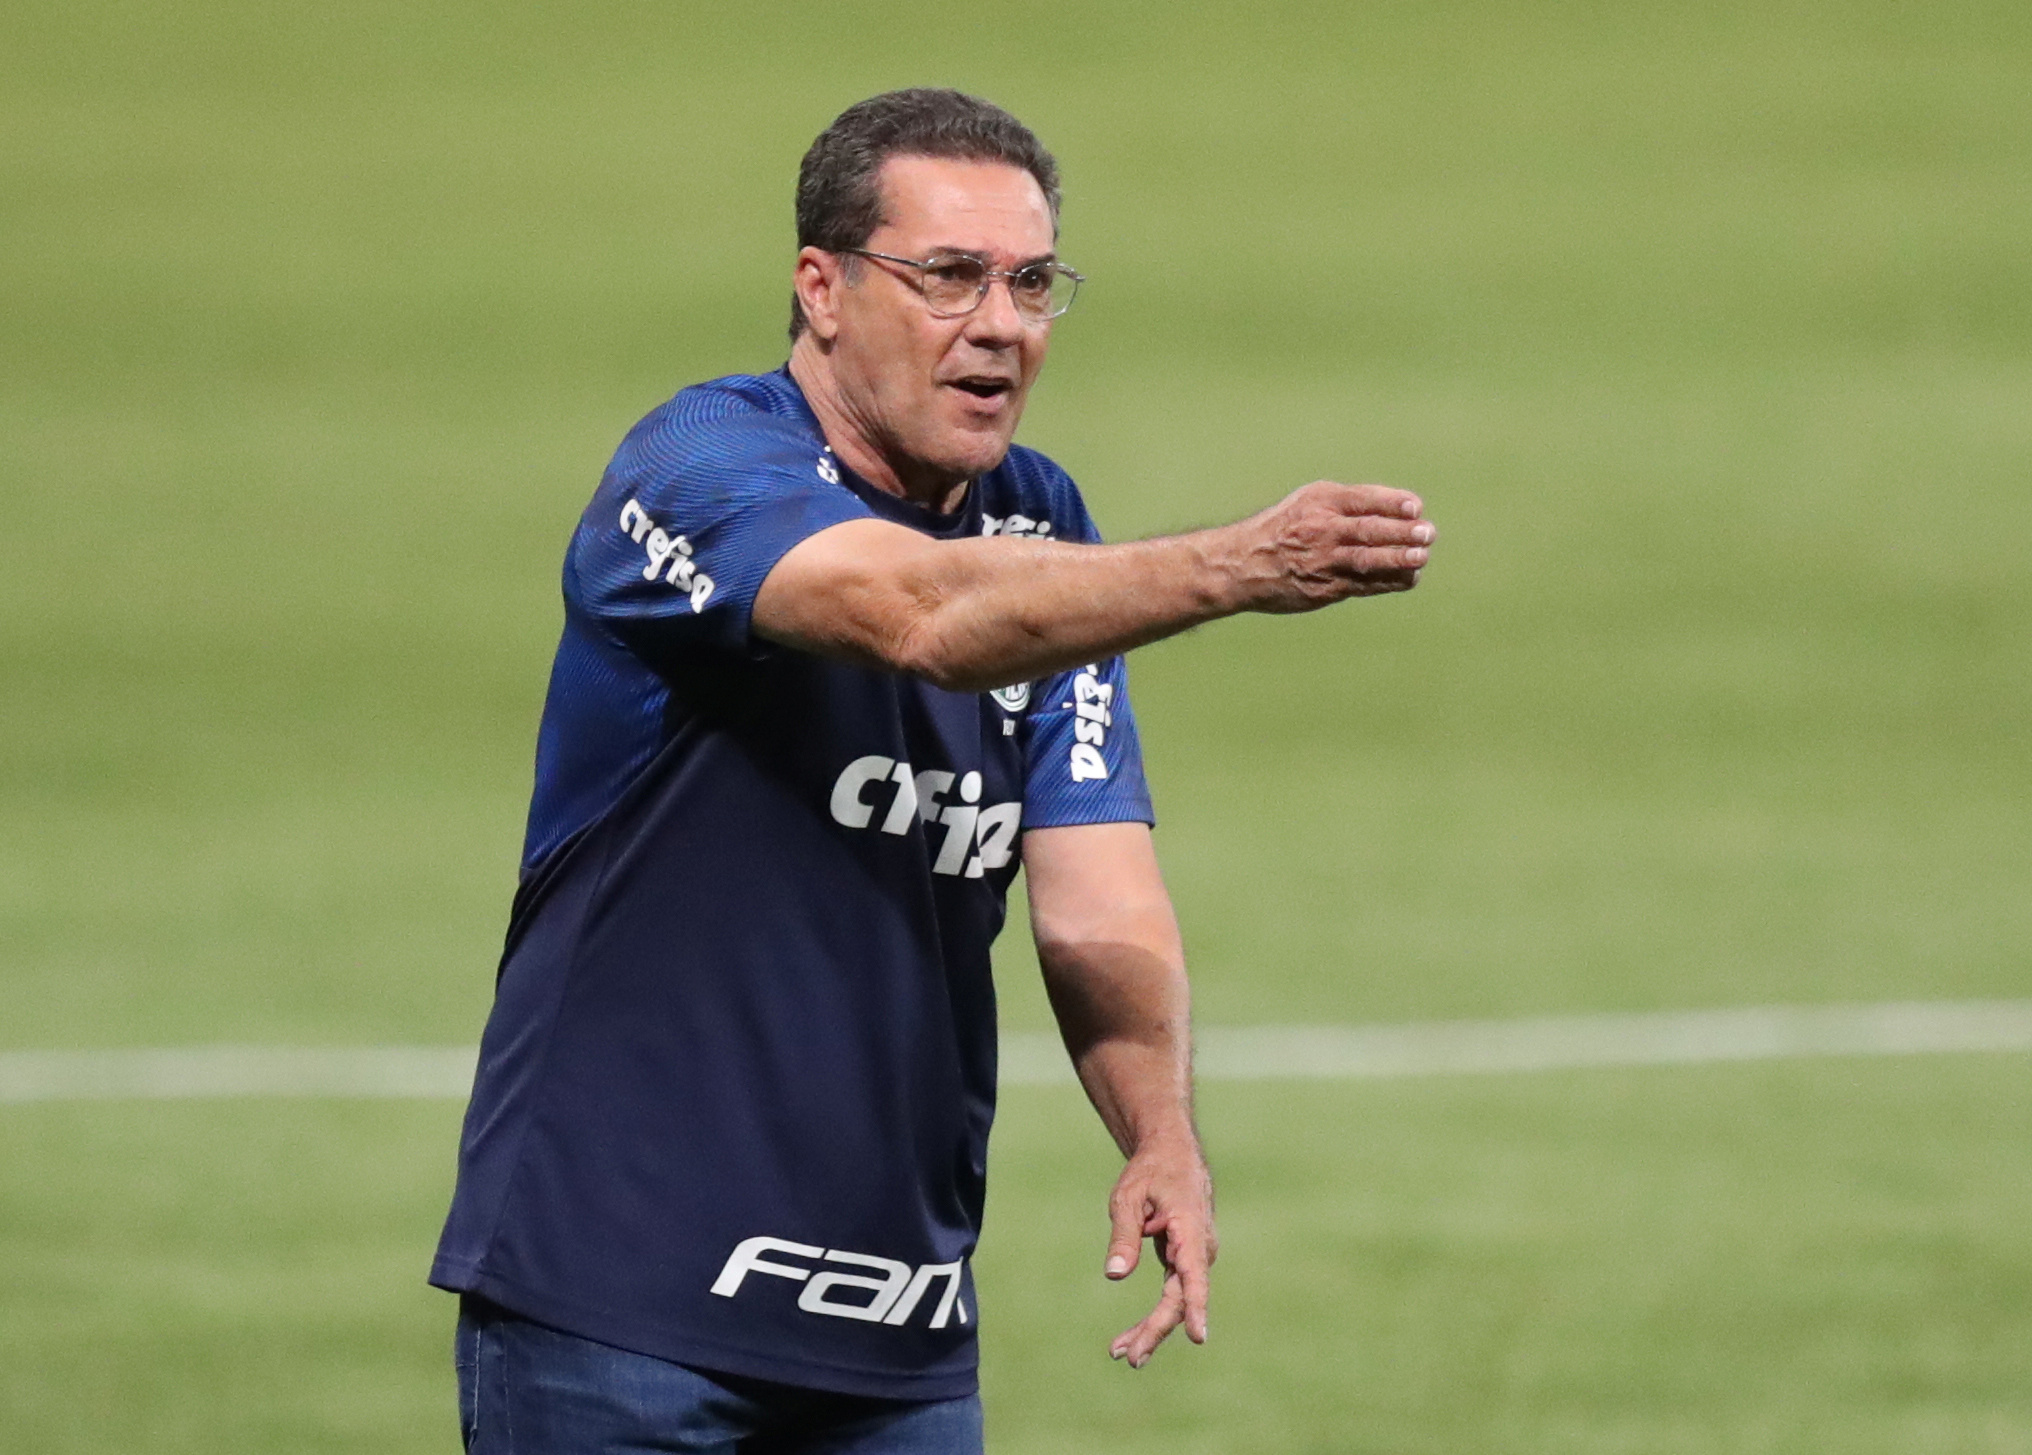 Vanderlei Luxemburgo, en el partido que lo eyectó del banco de Palmeiras: derrota 3-1 ante Curitiba, hace una semana (REUTERS/Amanda Perobelli)